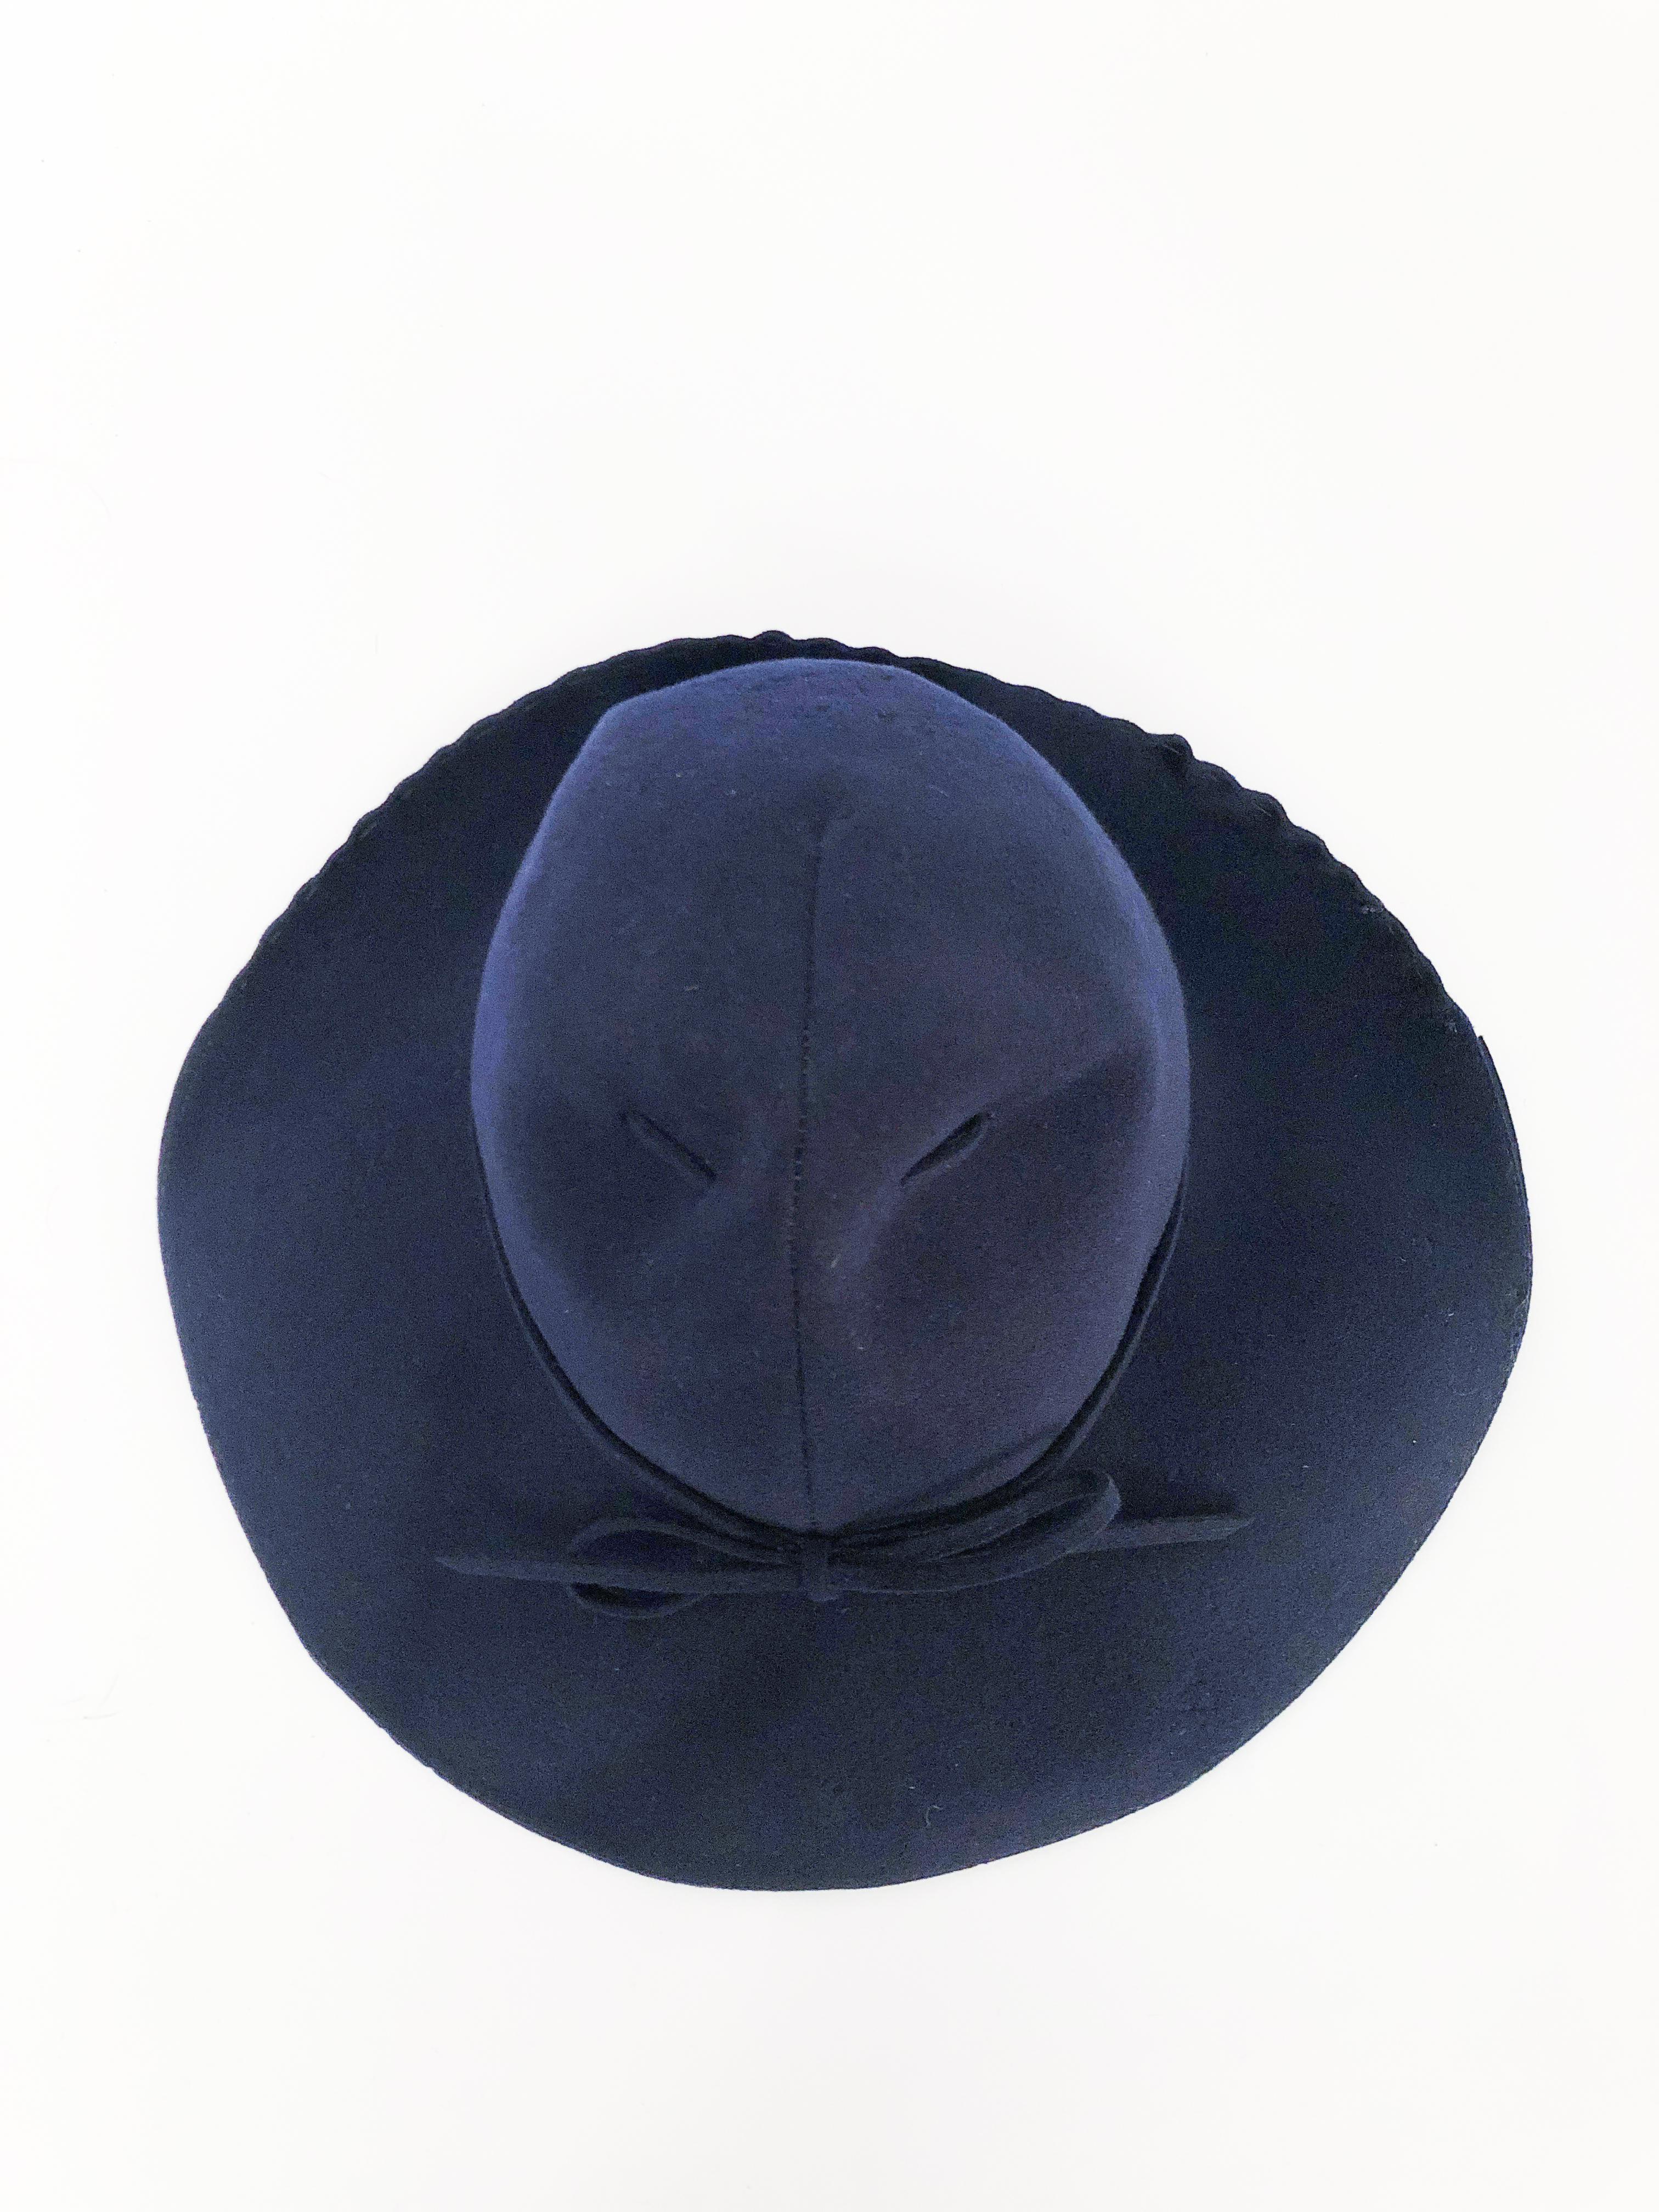 1930s fedora hat